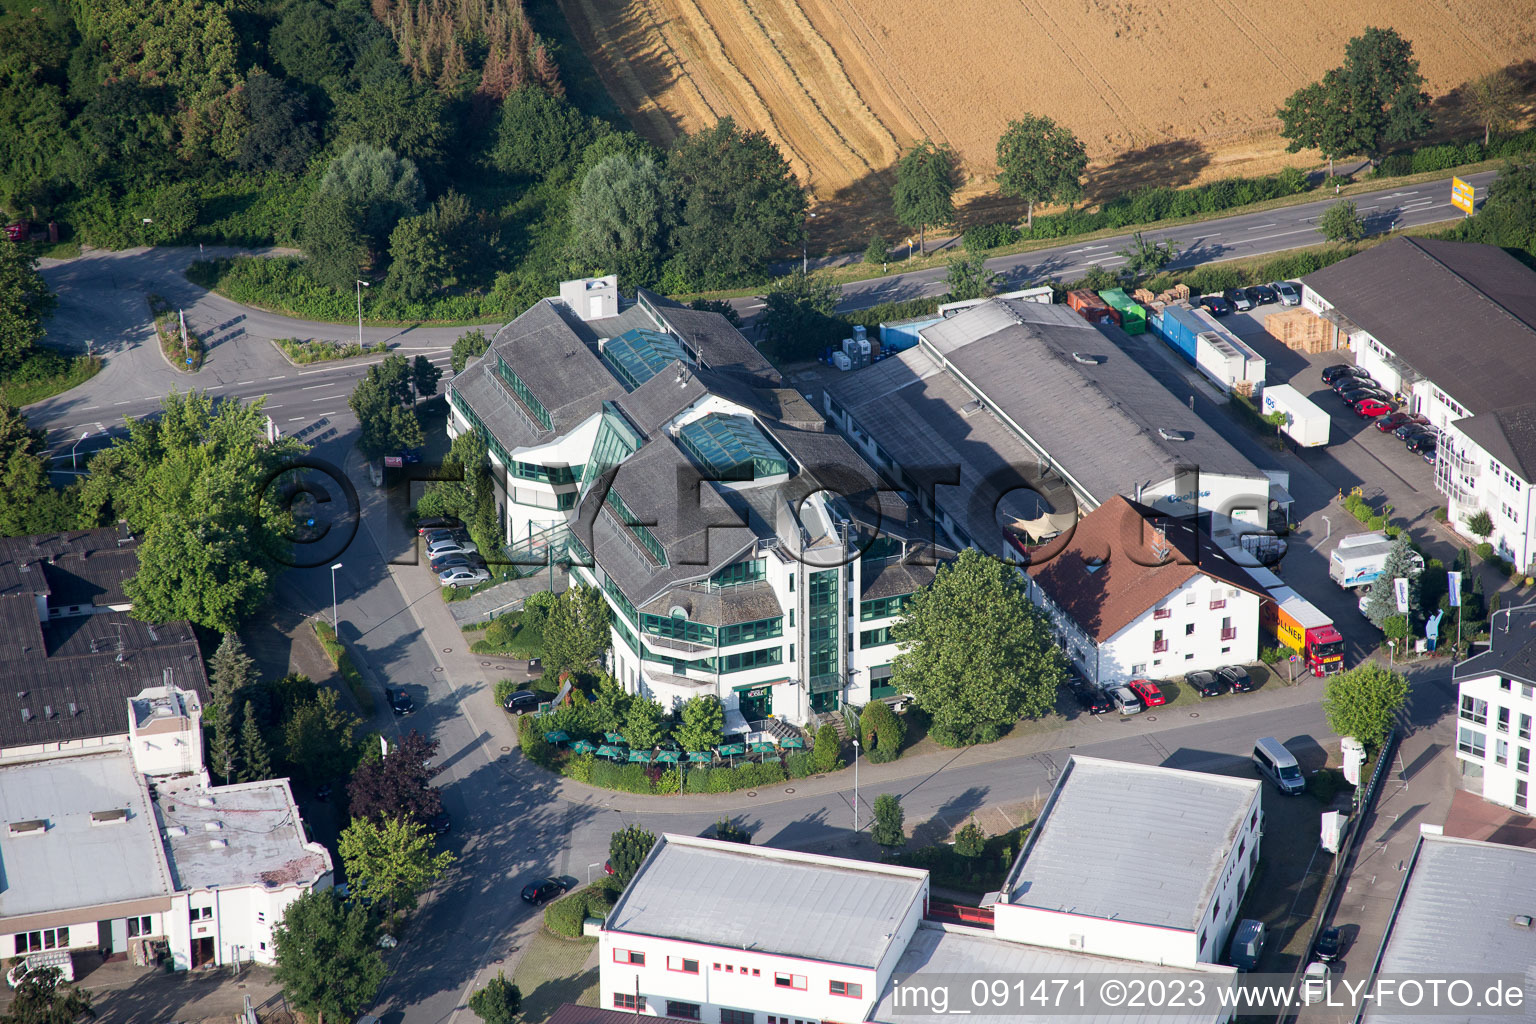 Bensheim im Bundesland Hessen, Deutschland aus der Luft betrachtet